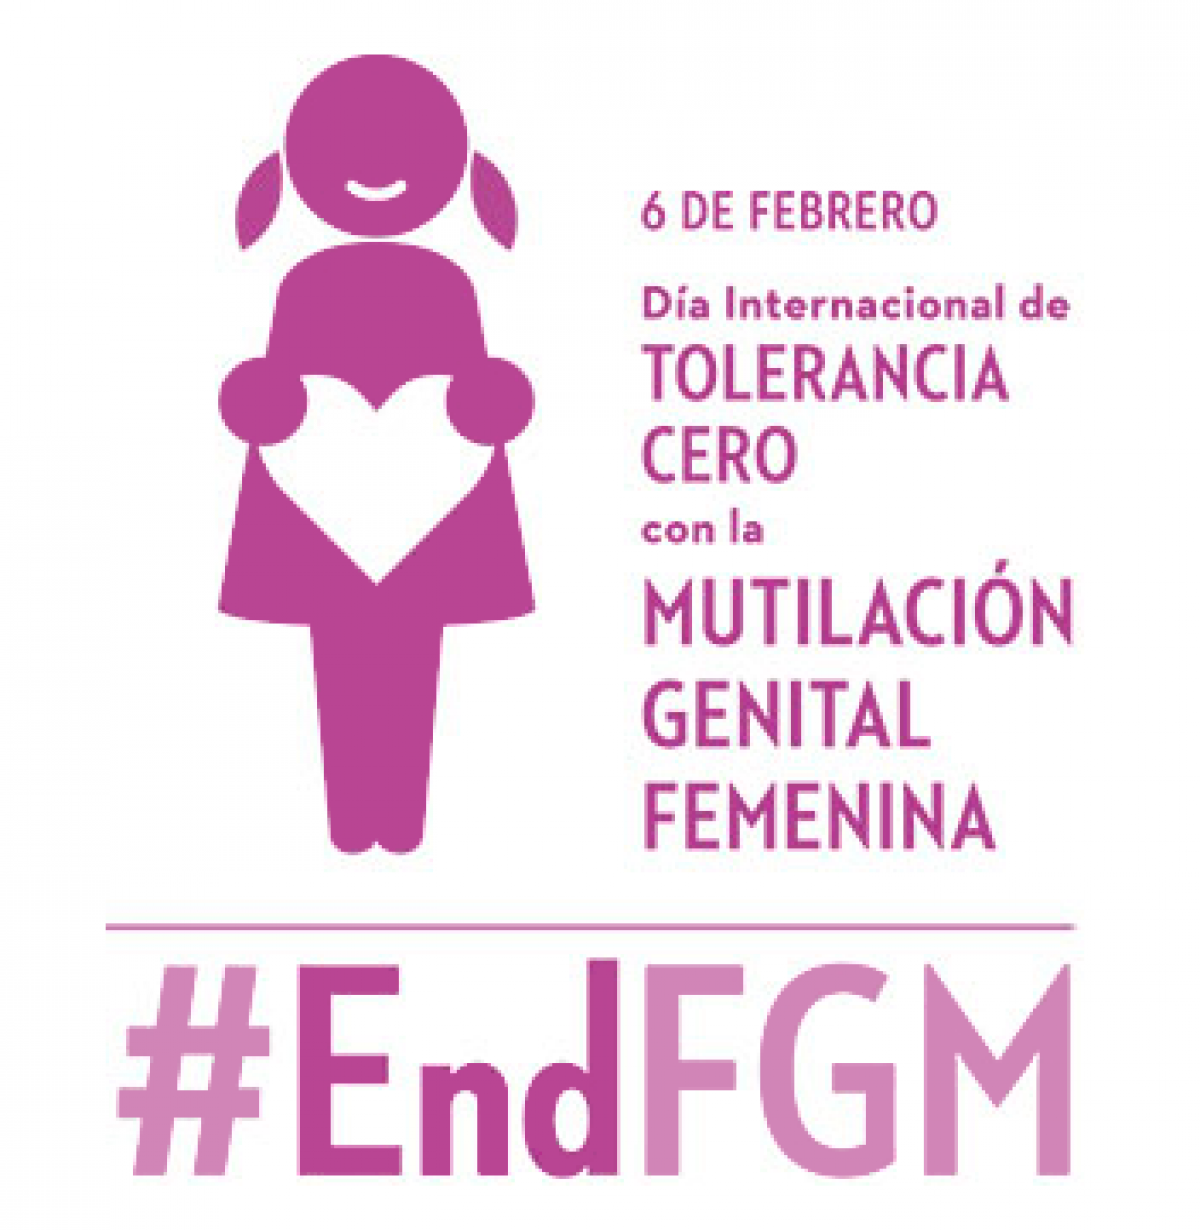 Dia Internacional de Tolerancia Cero contra la Mutilación Genital Femenina